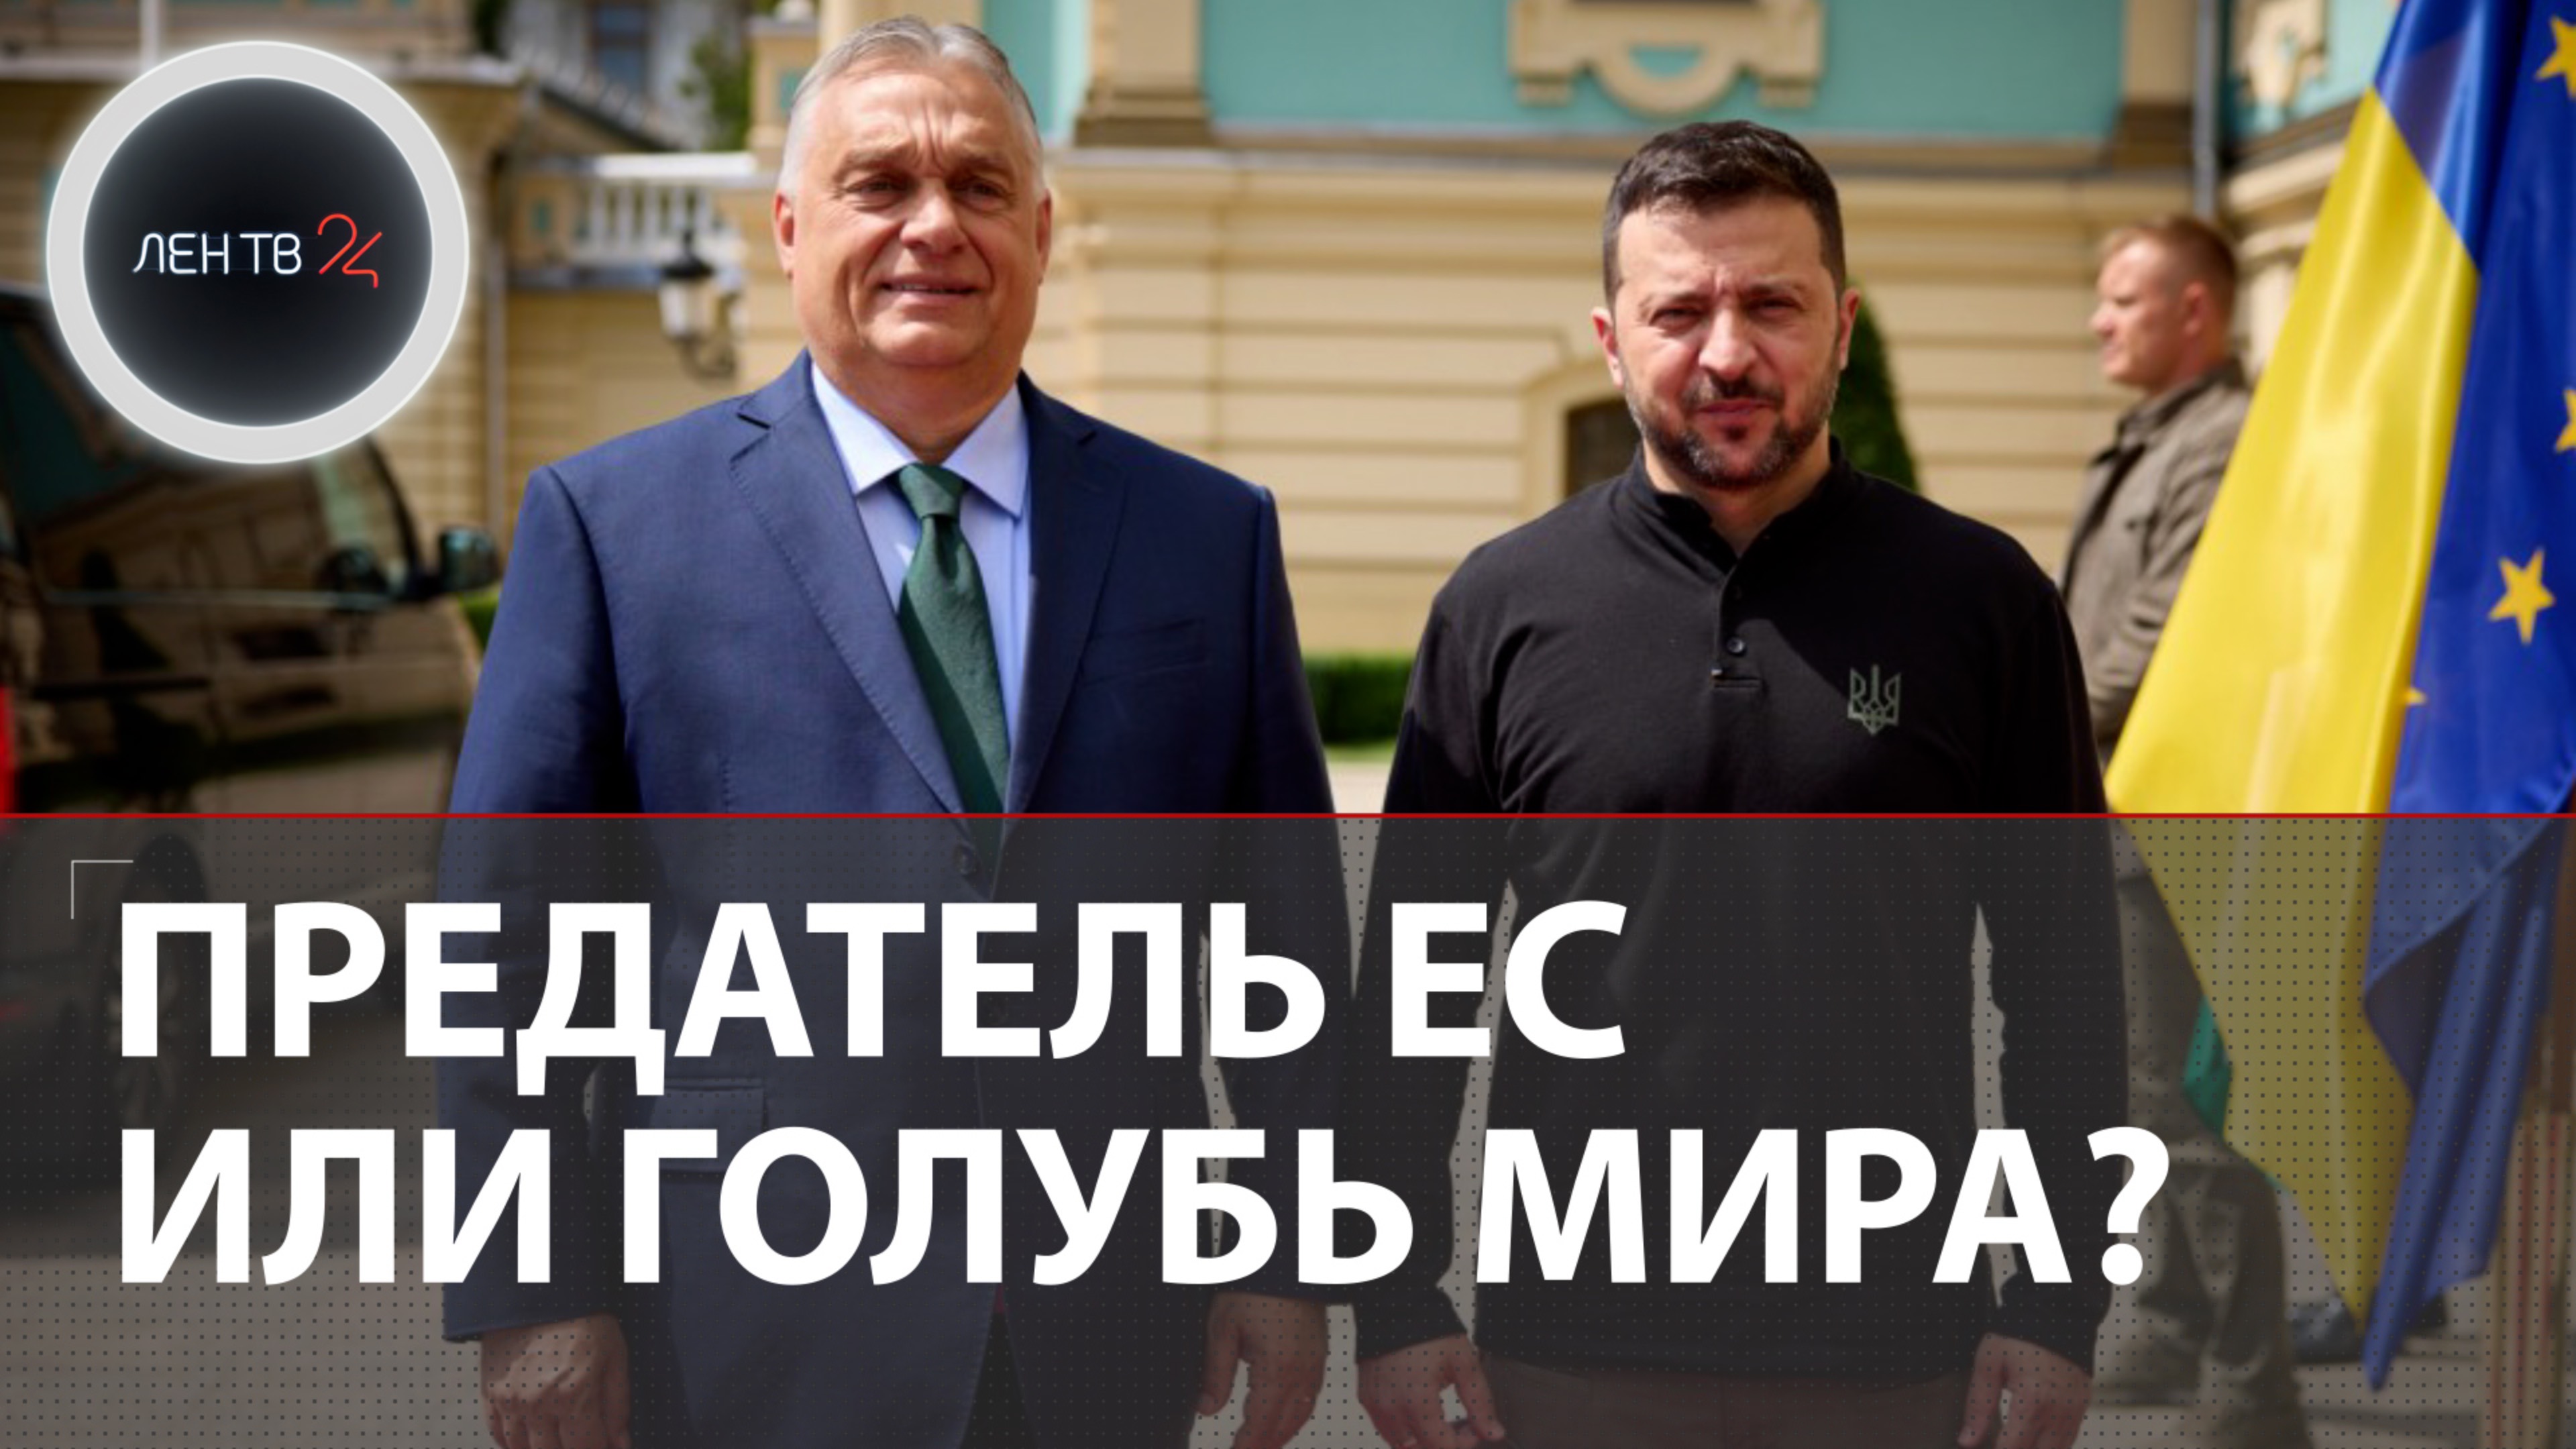 Орбан приезжал в Киев, чтобы уговорить Зеленского на переговоры